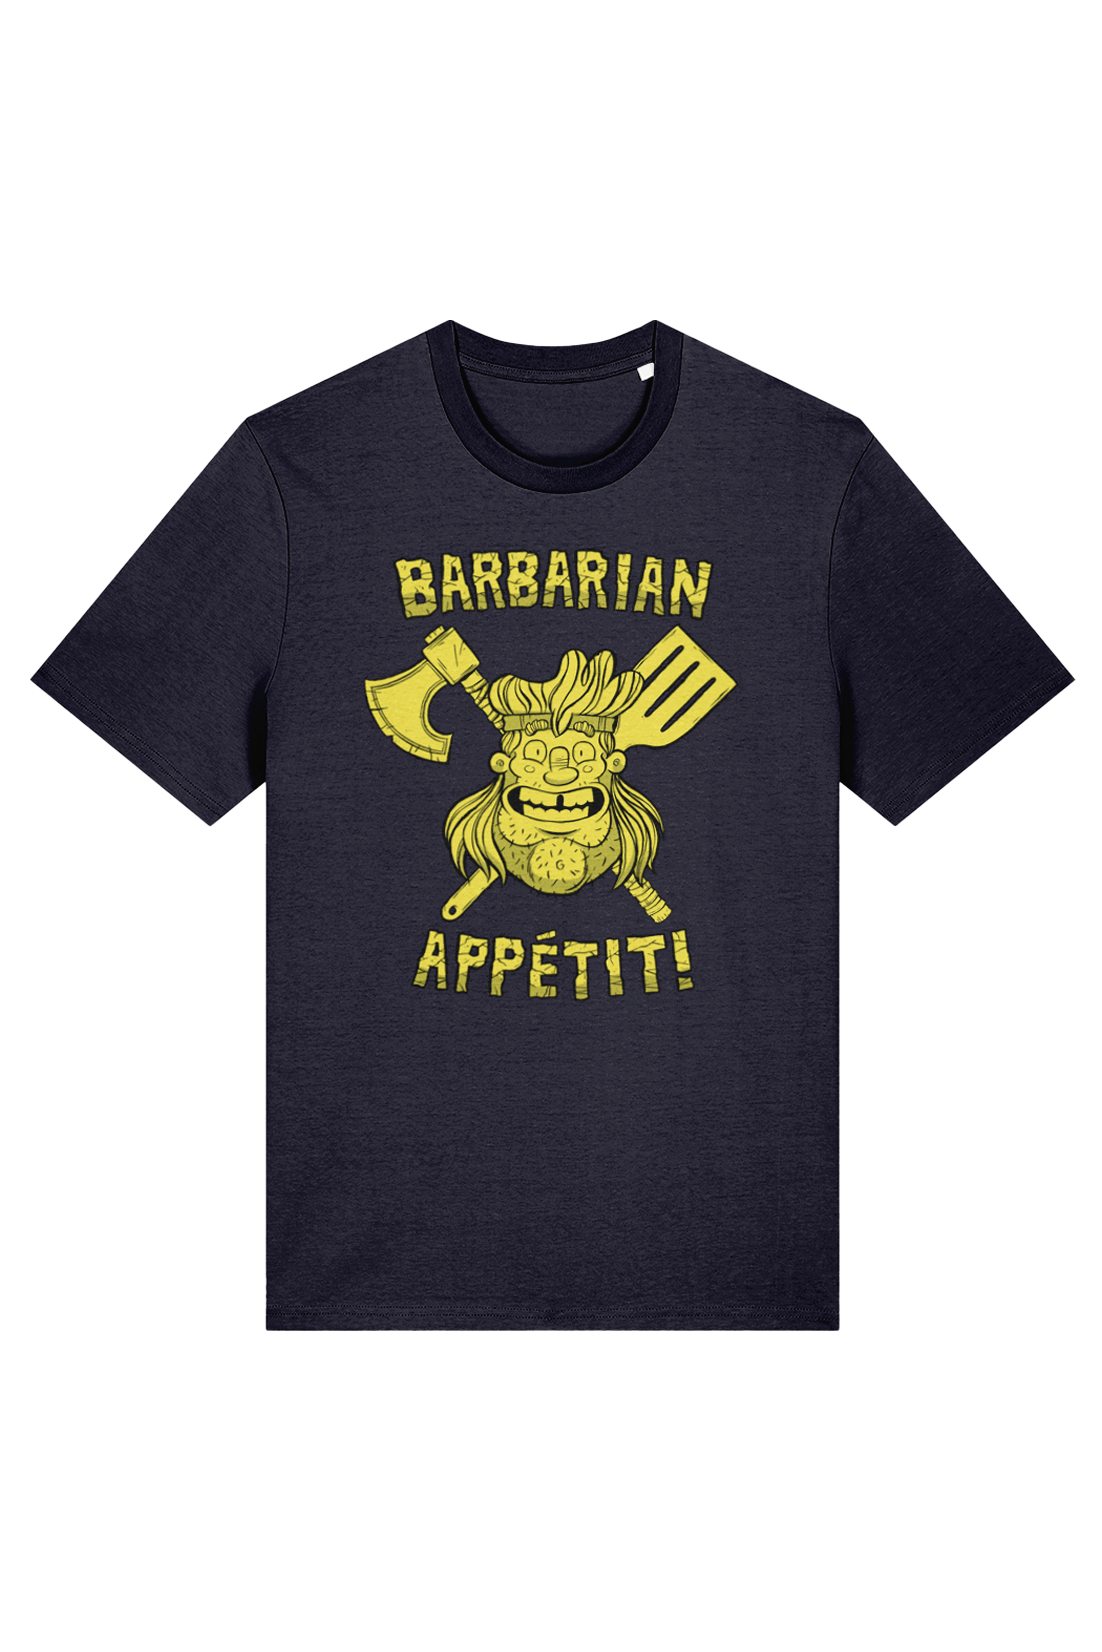 Gorebrah Barbarian Appetit adult t-shirt